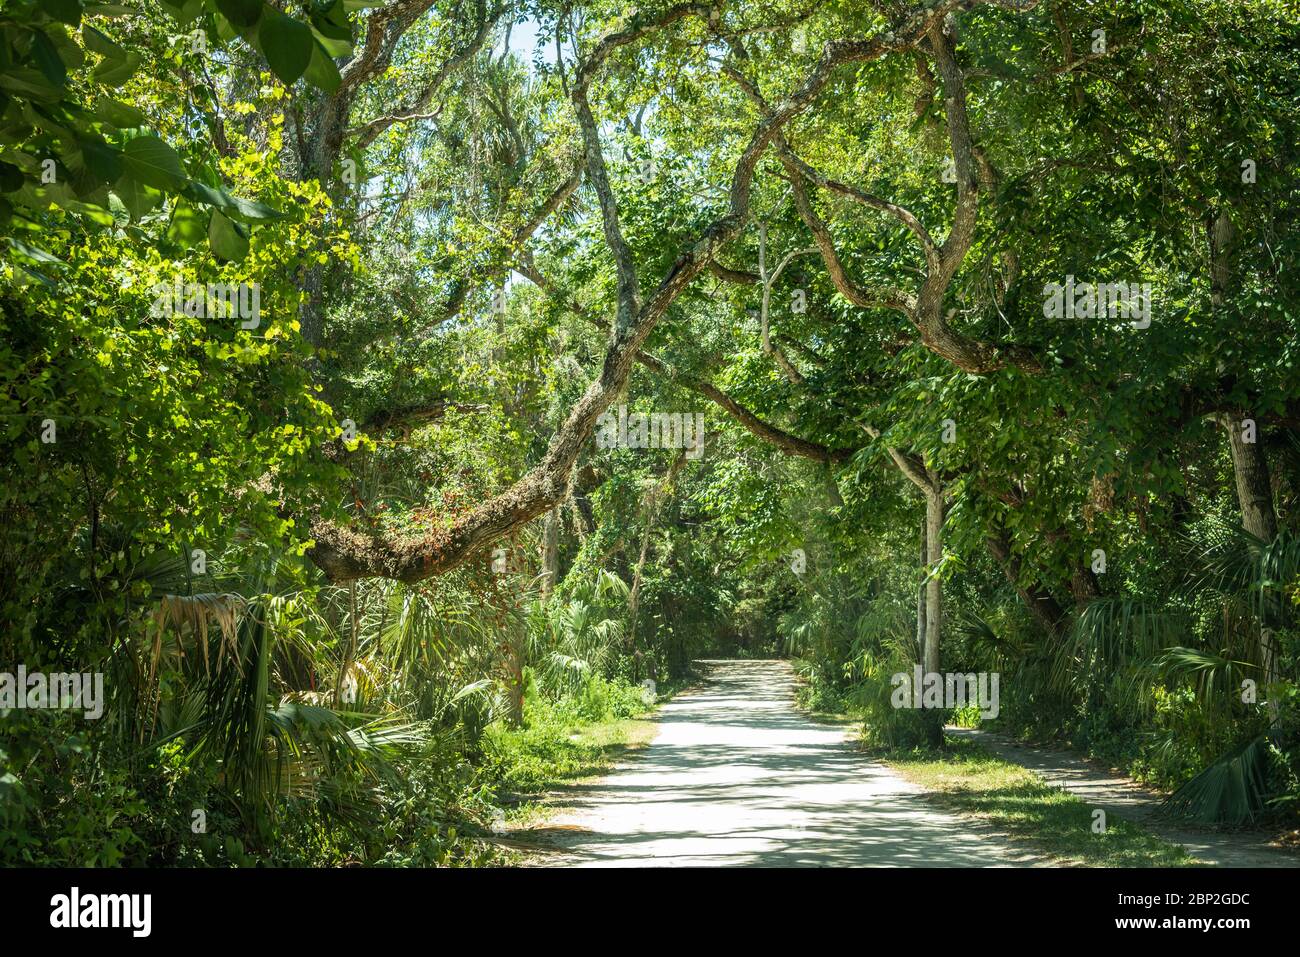 Végétation luxuriante le long de Sailfish Drive, la route panoramique de Ponce Inlet, à Ponce Inlet, Floride, juste au sud de Daytona Beach Shores. (ÉTATS-UNIS) Banque D'Images